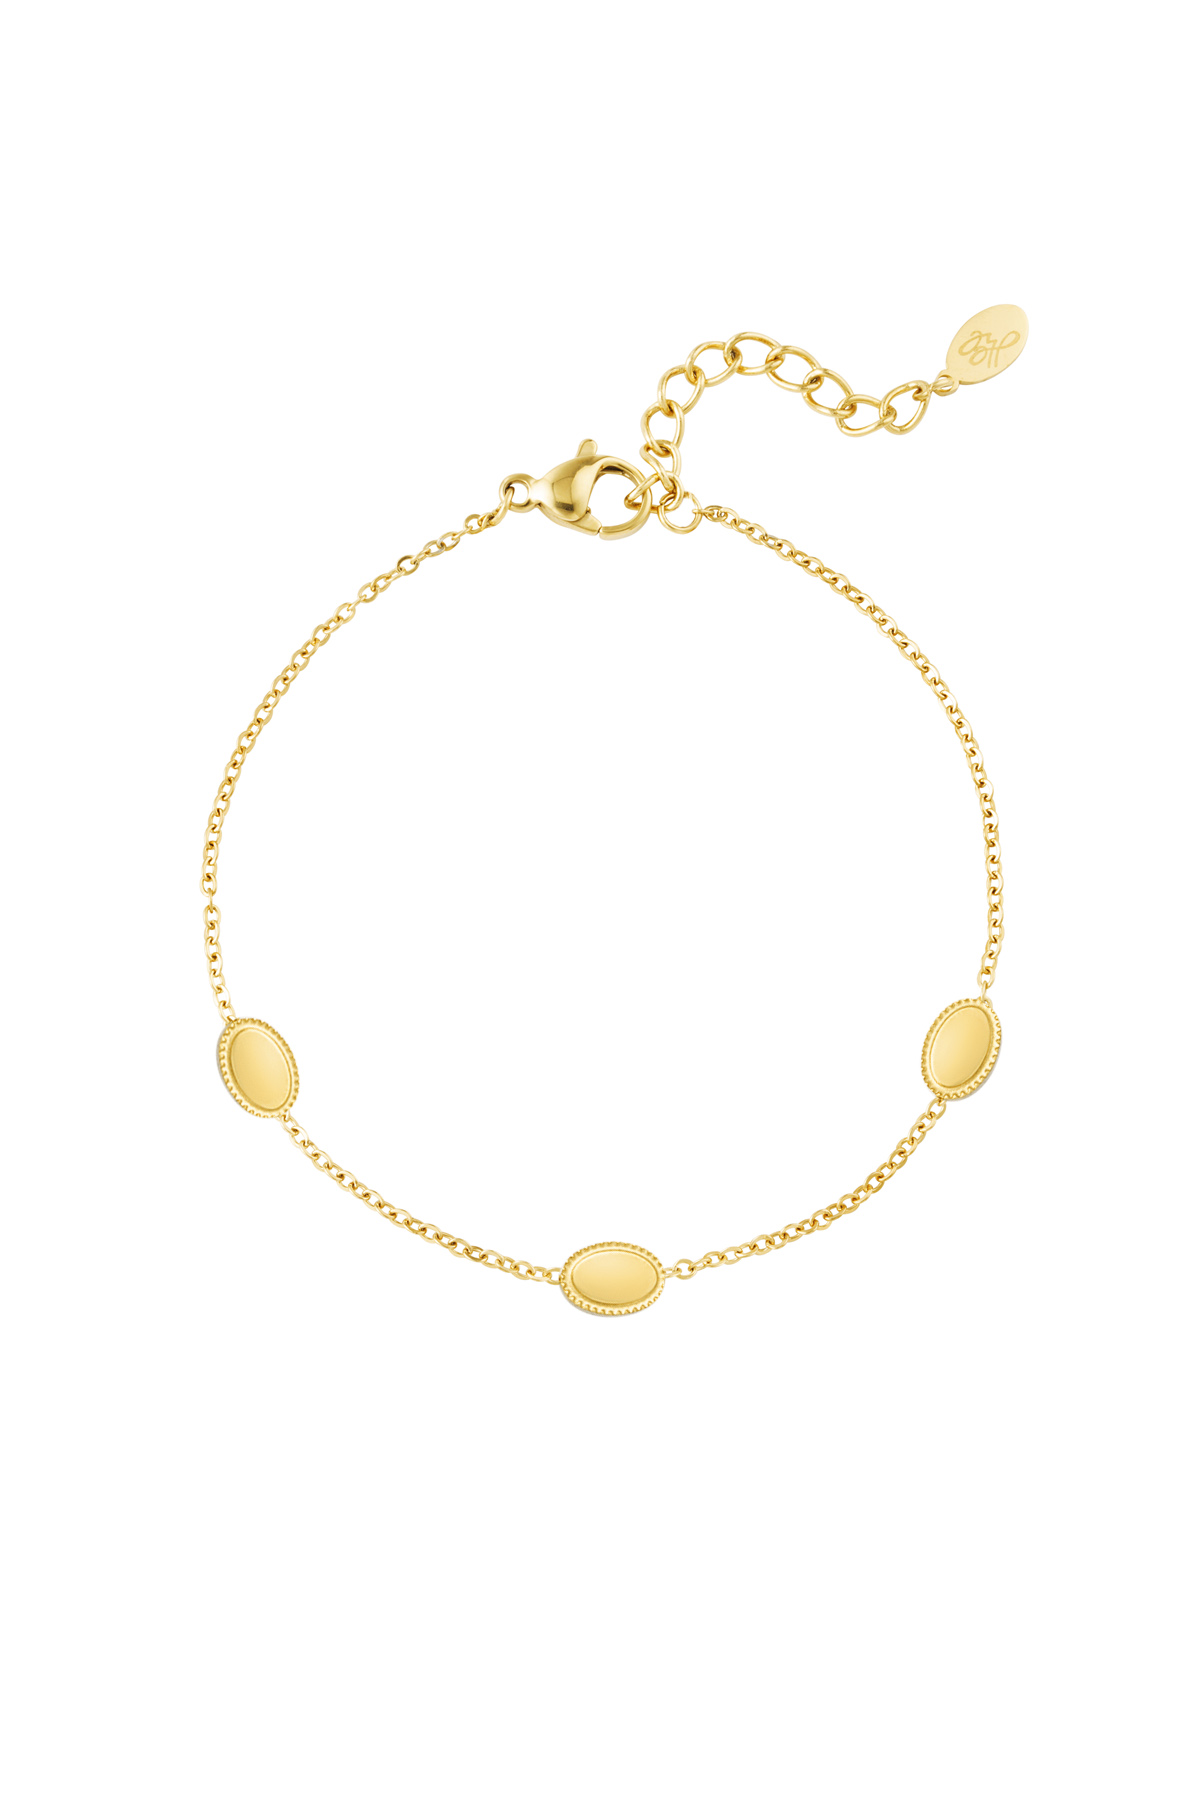 Bracelet vintage 3 charms - gold h5 